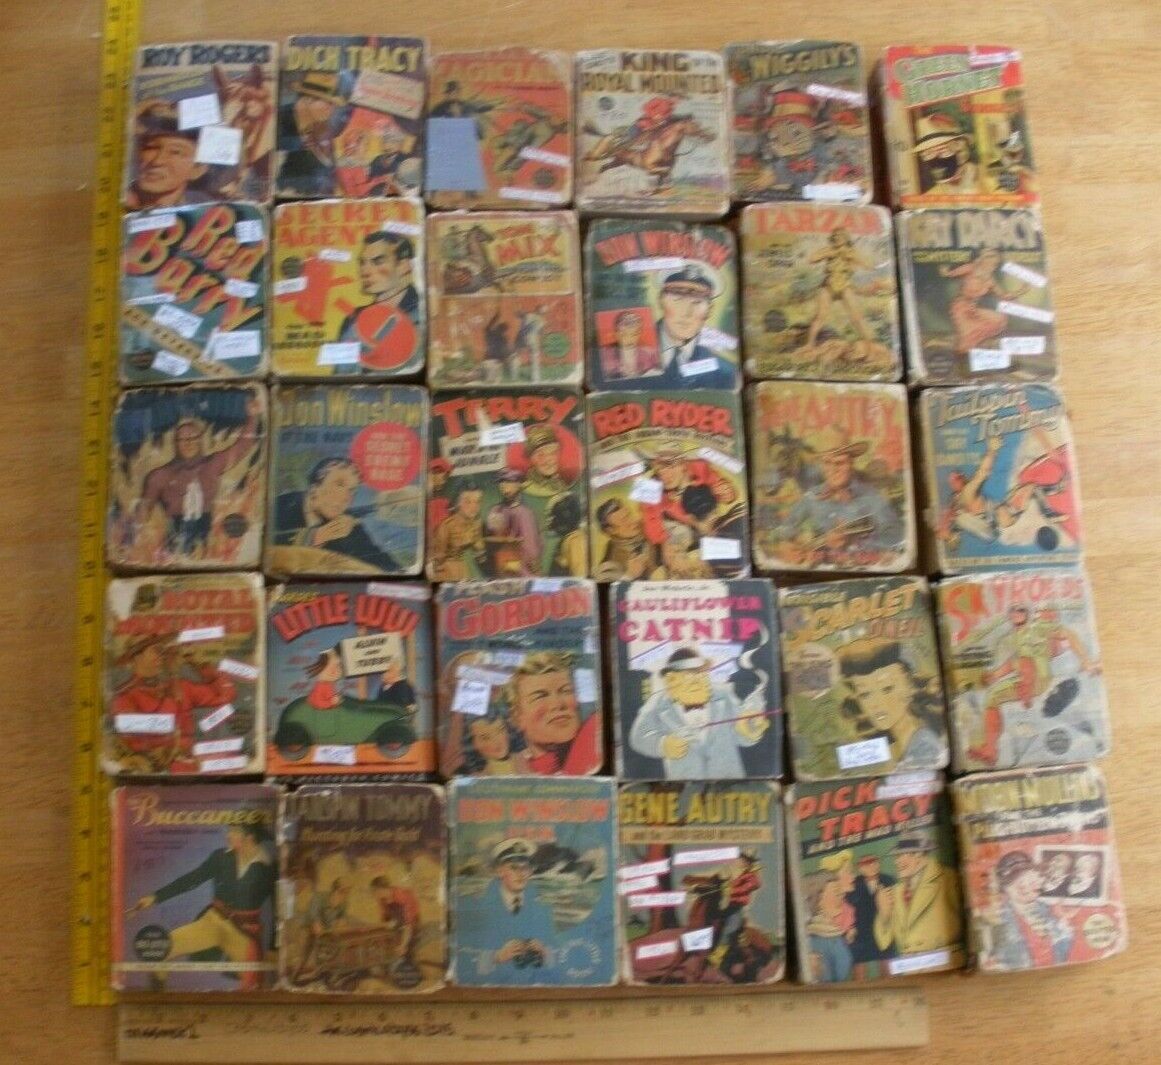 Green Hornet The Phantom KING Roy Rogers 1930s Big Little Books lot of 30